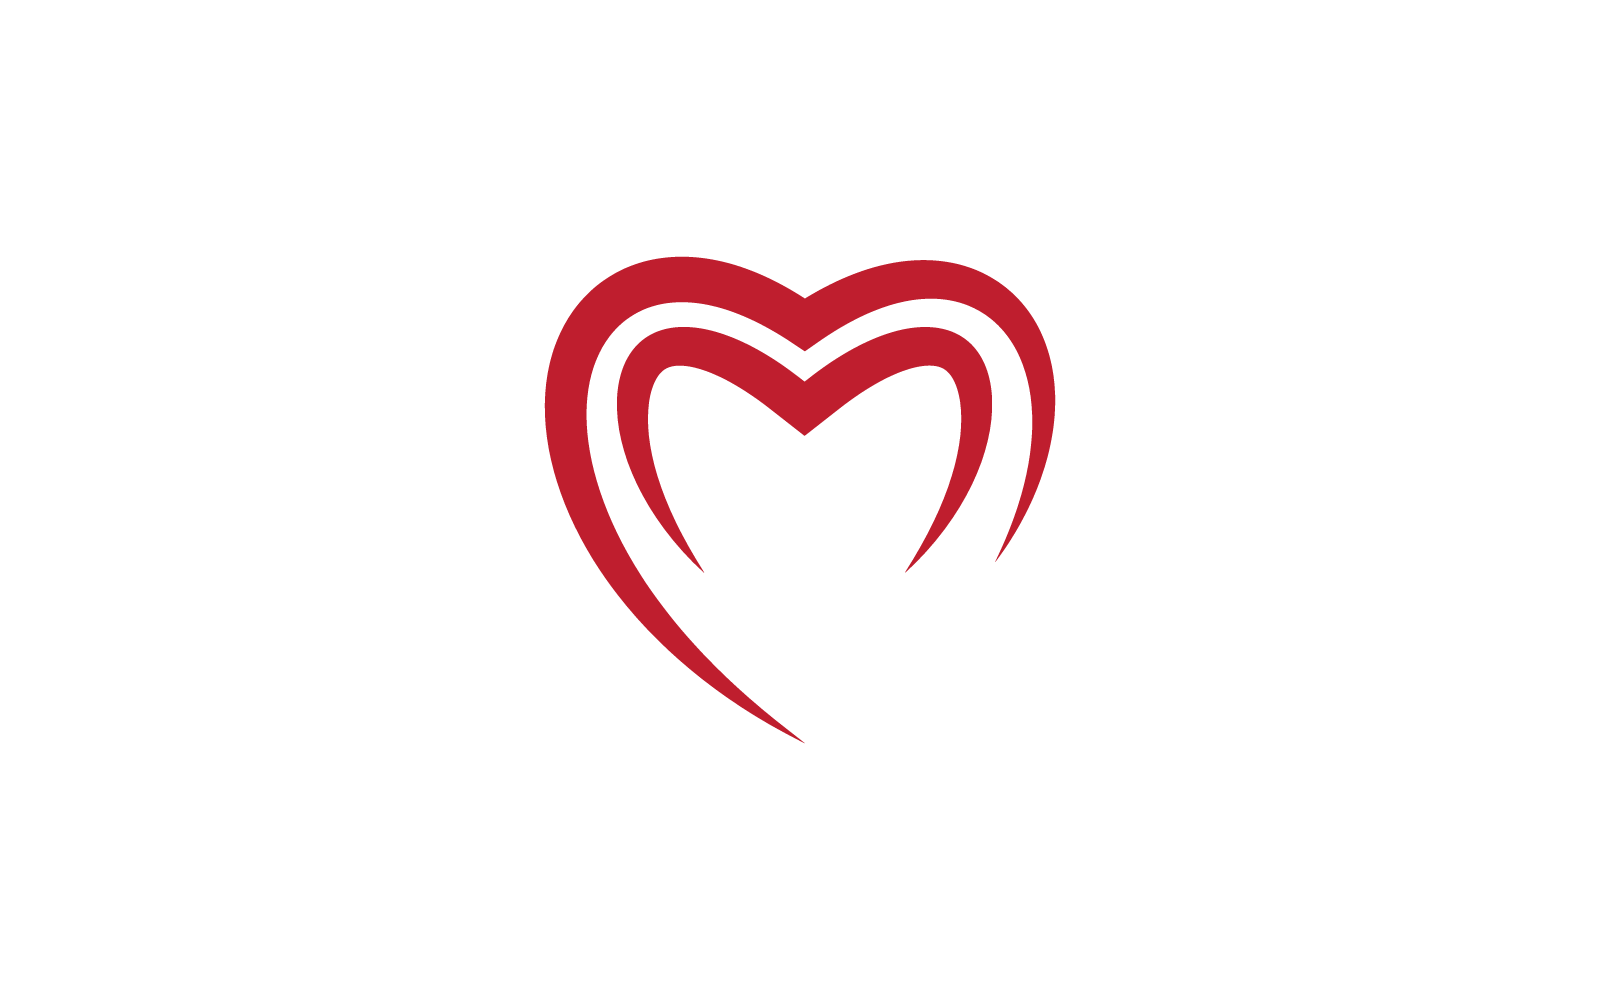 Love logo design icon vector illustration template